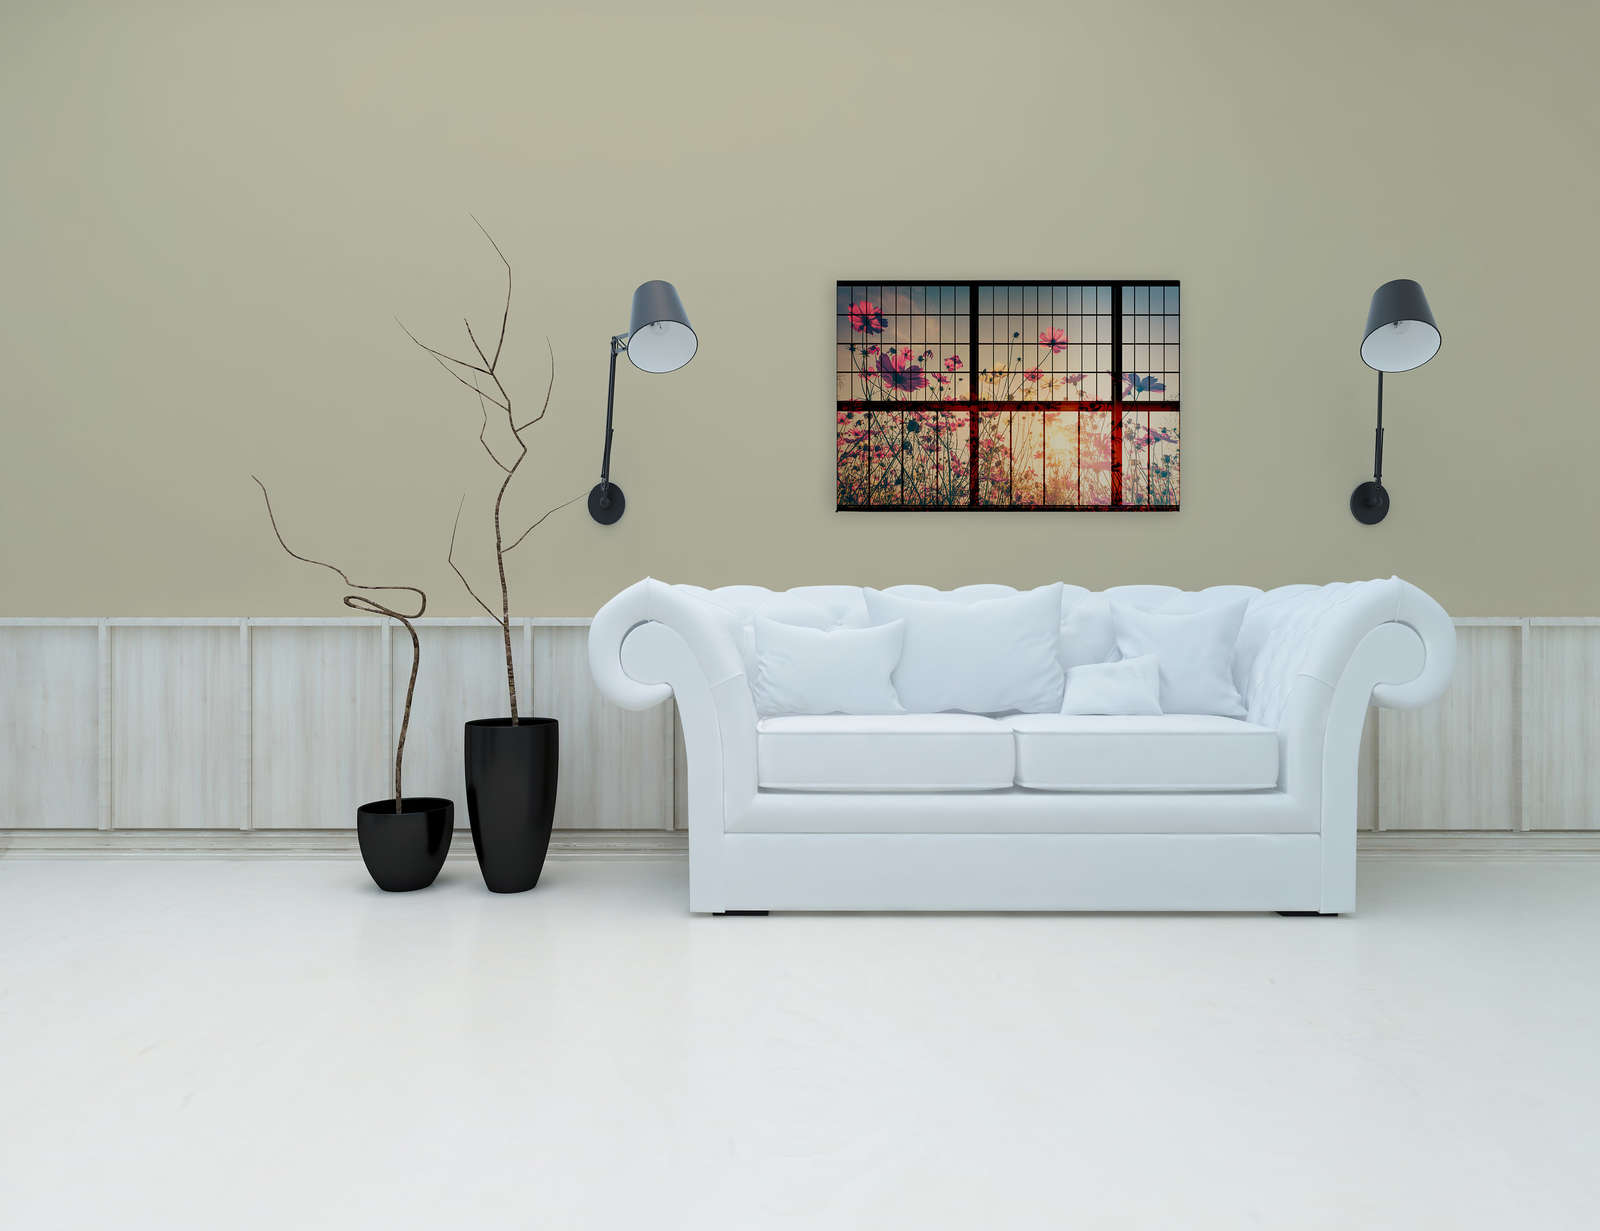             Prato 1 - Quadro su tela di Muntin con prato fiorito - 0,90 m x 0,60 m
        